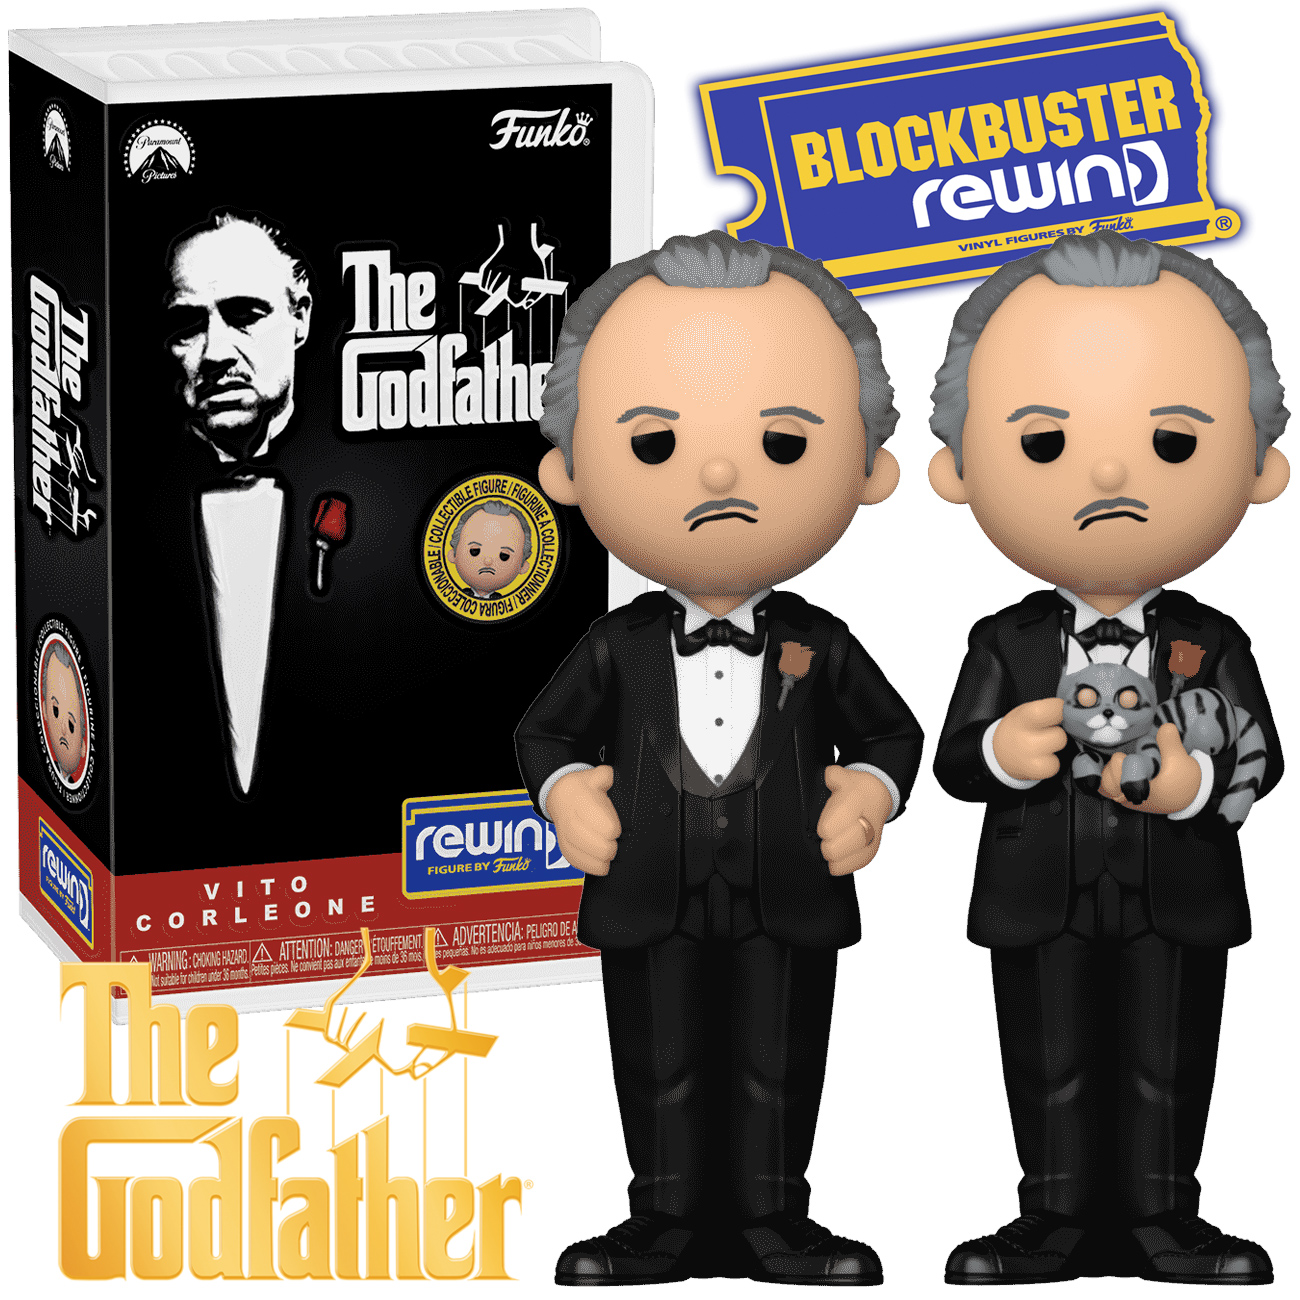 Boneco Don Vito Corleone Funko Blockbuster Rewind em Caixa Clamshell de VHS (O Poderoso Chefão)